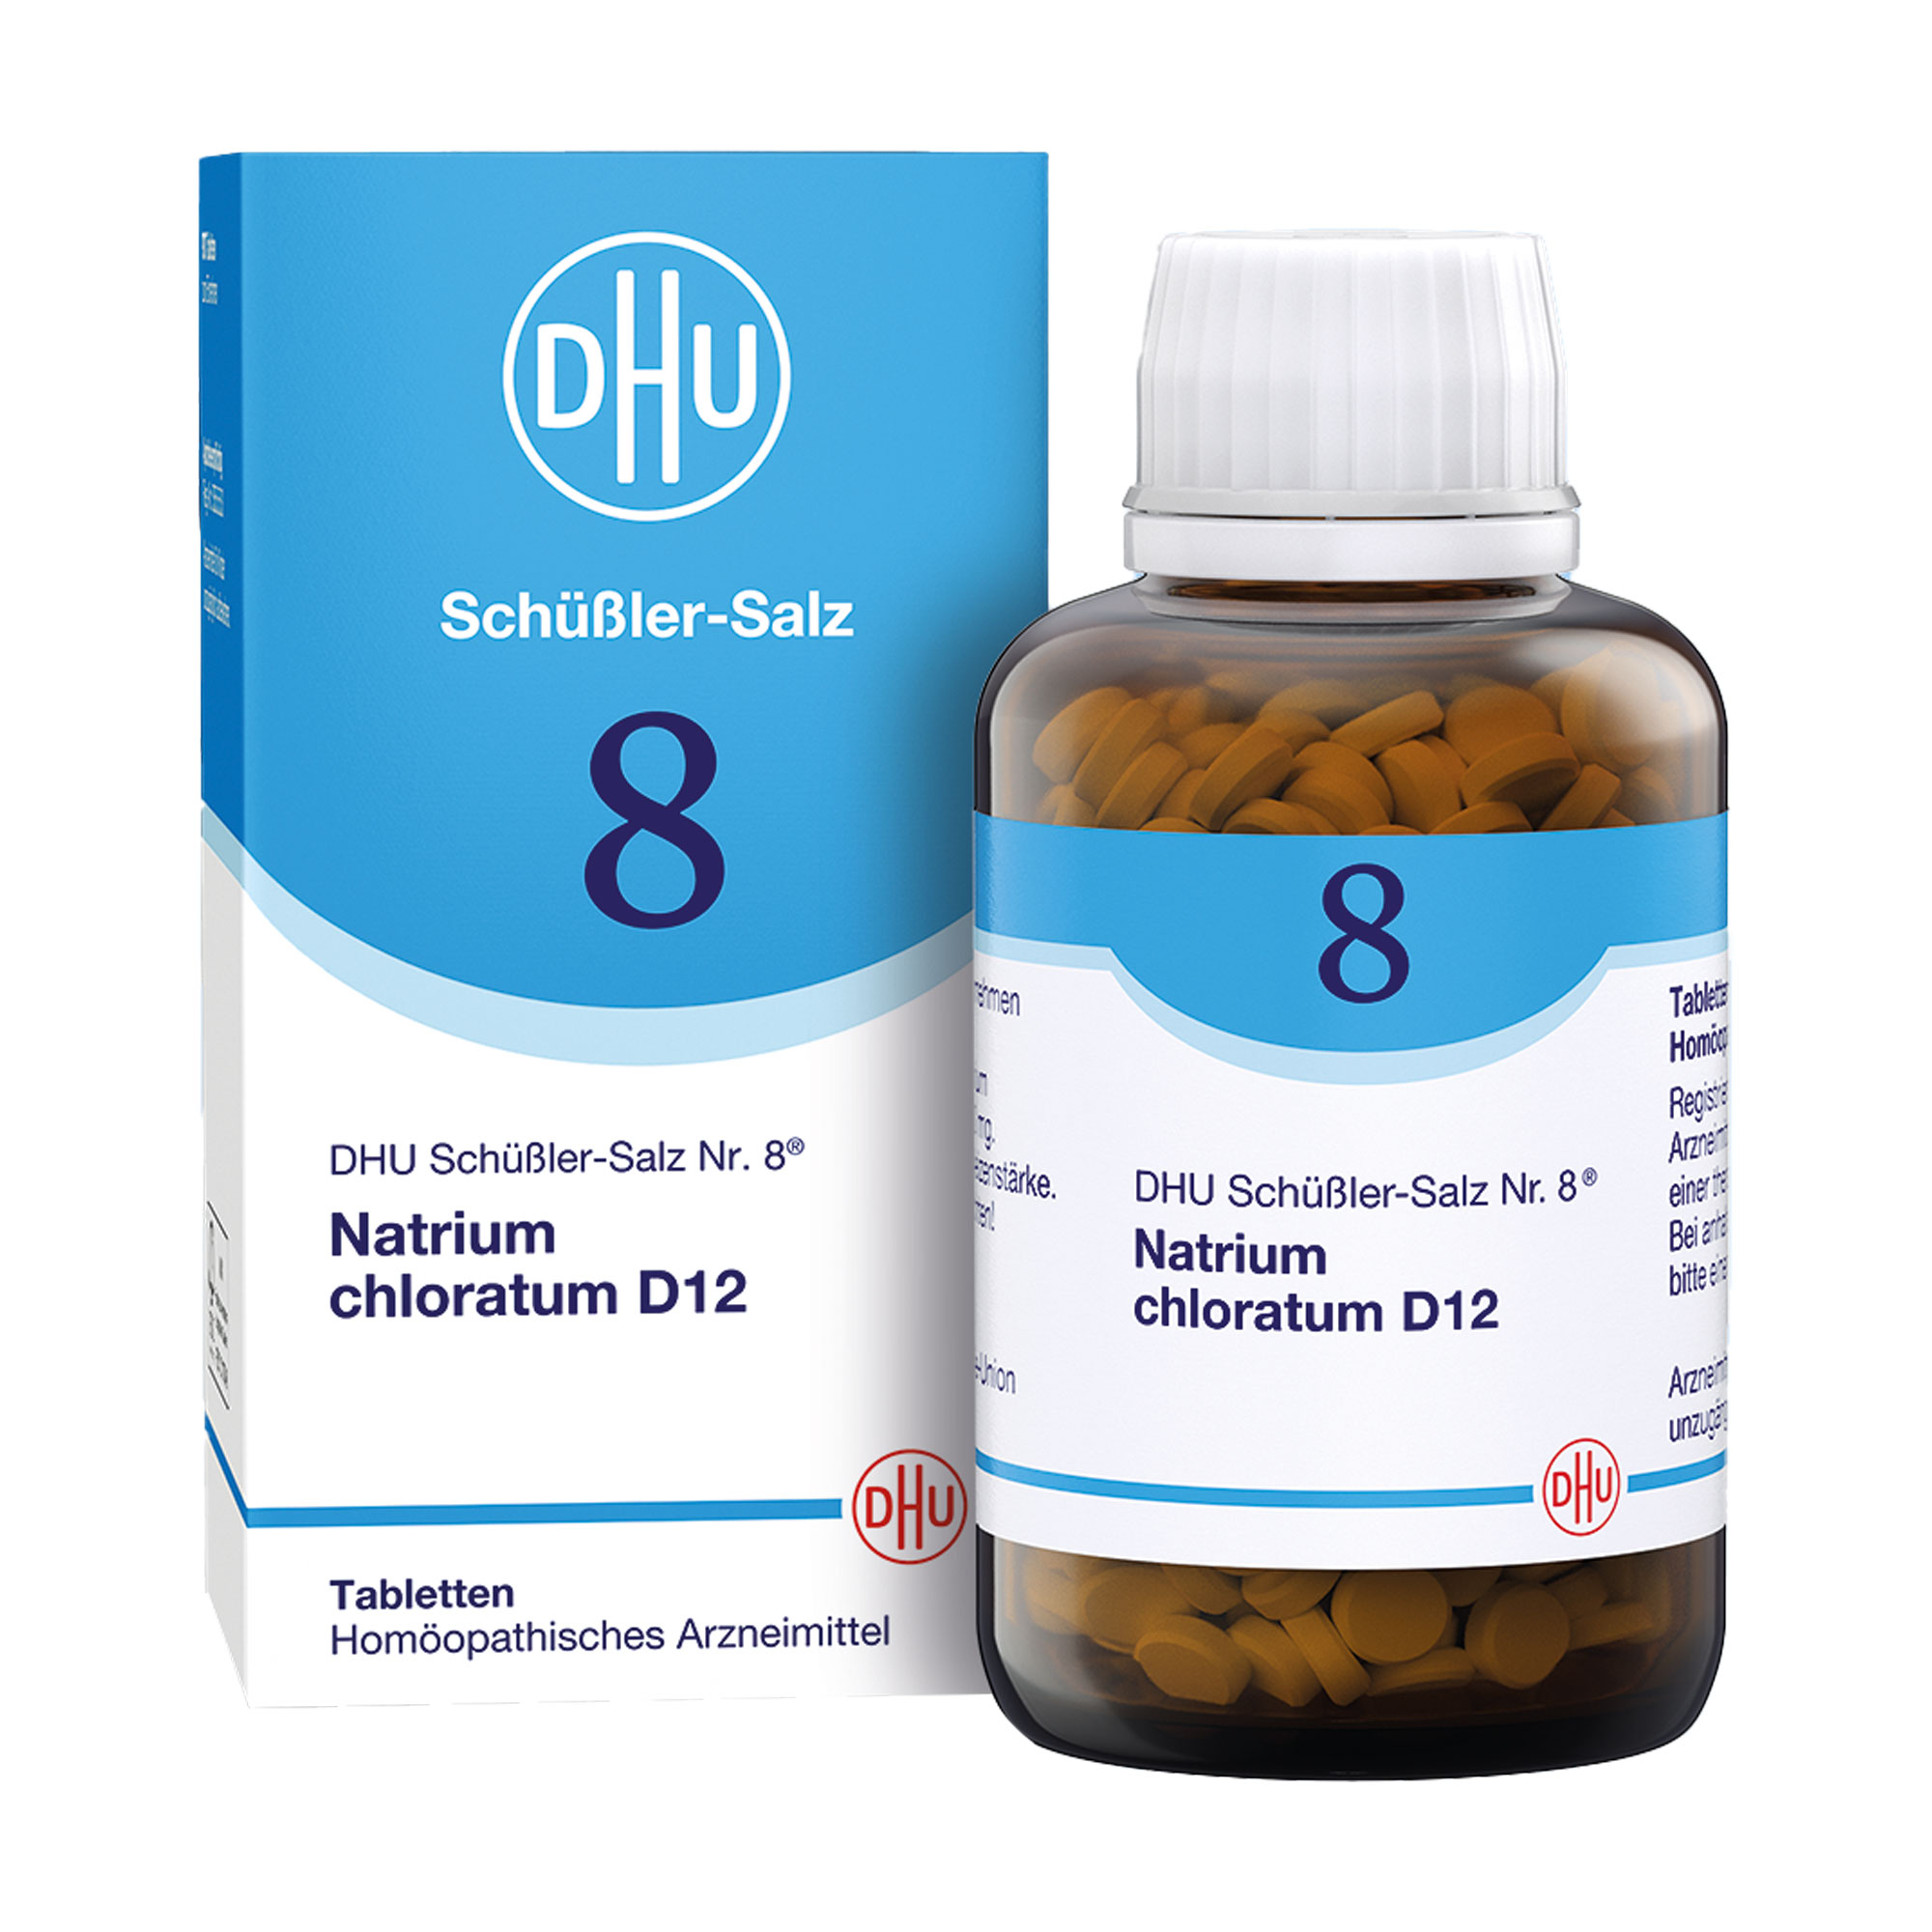 Homöopathisches Arzneimittel mit Natrium chloratum Trit. D12.